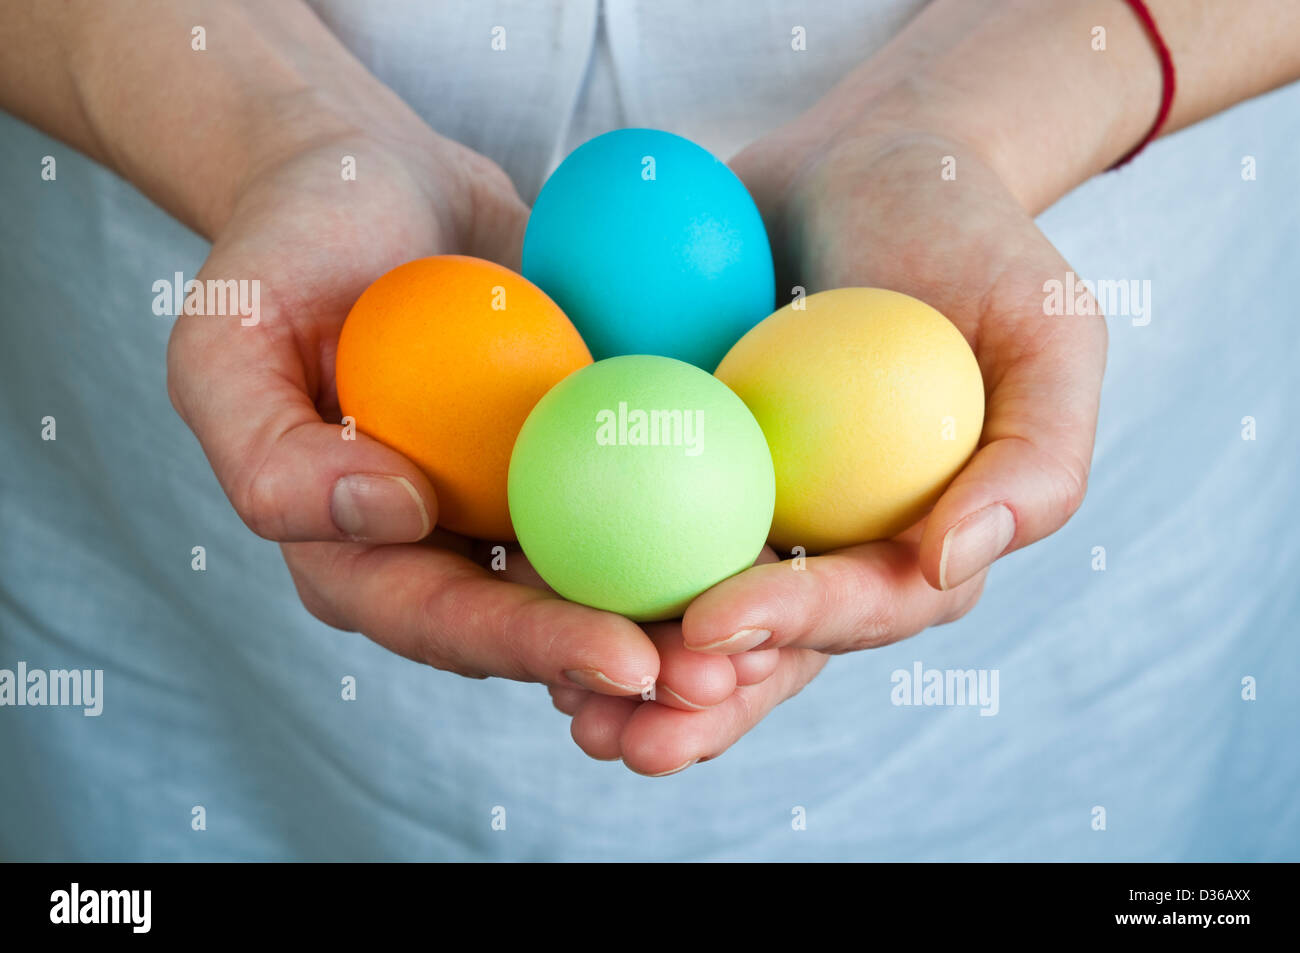 Les mains tenant quatre œufs de Pâques colorés Banque D'Images